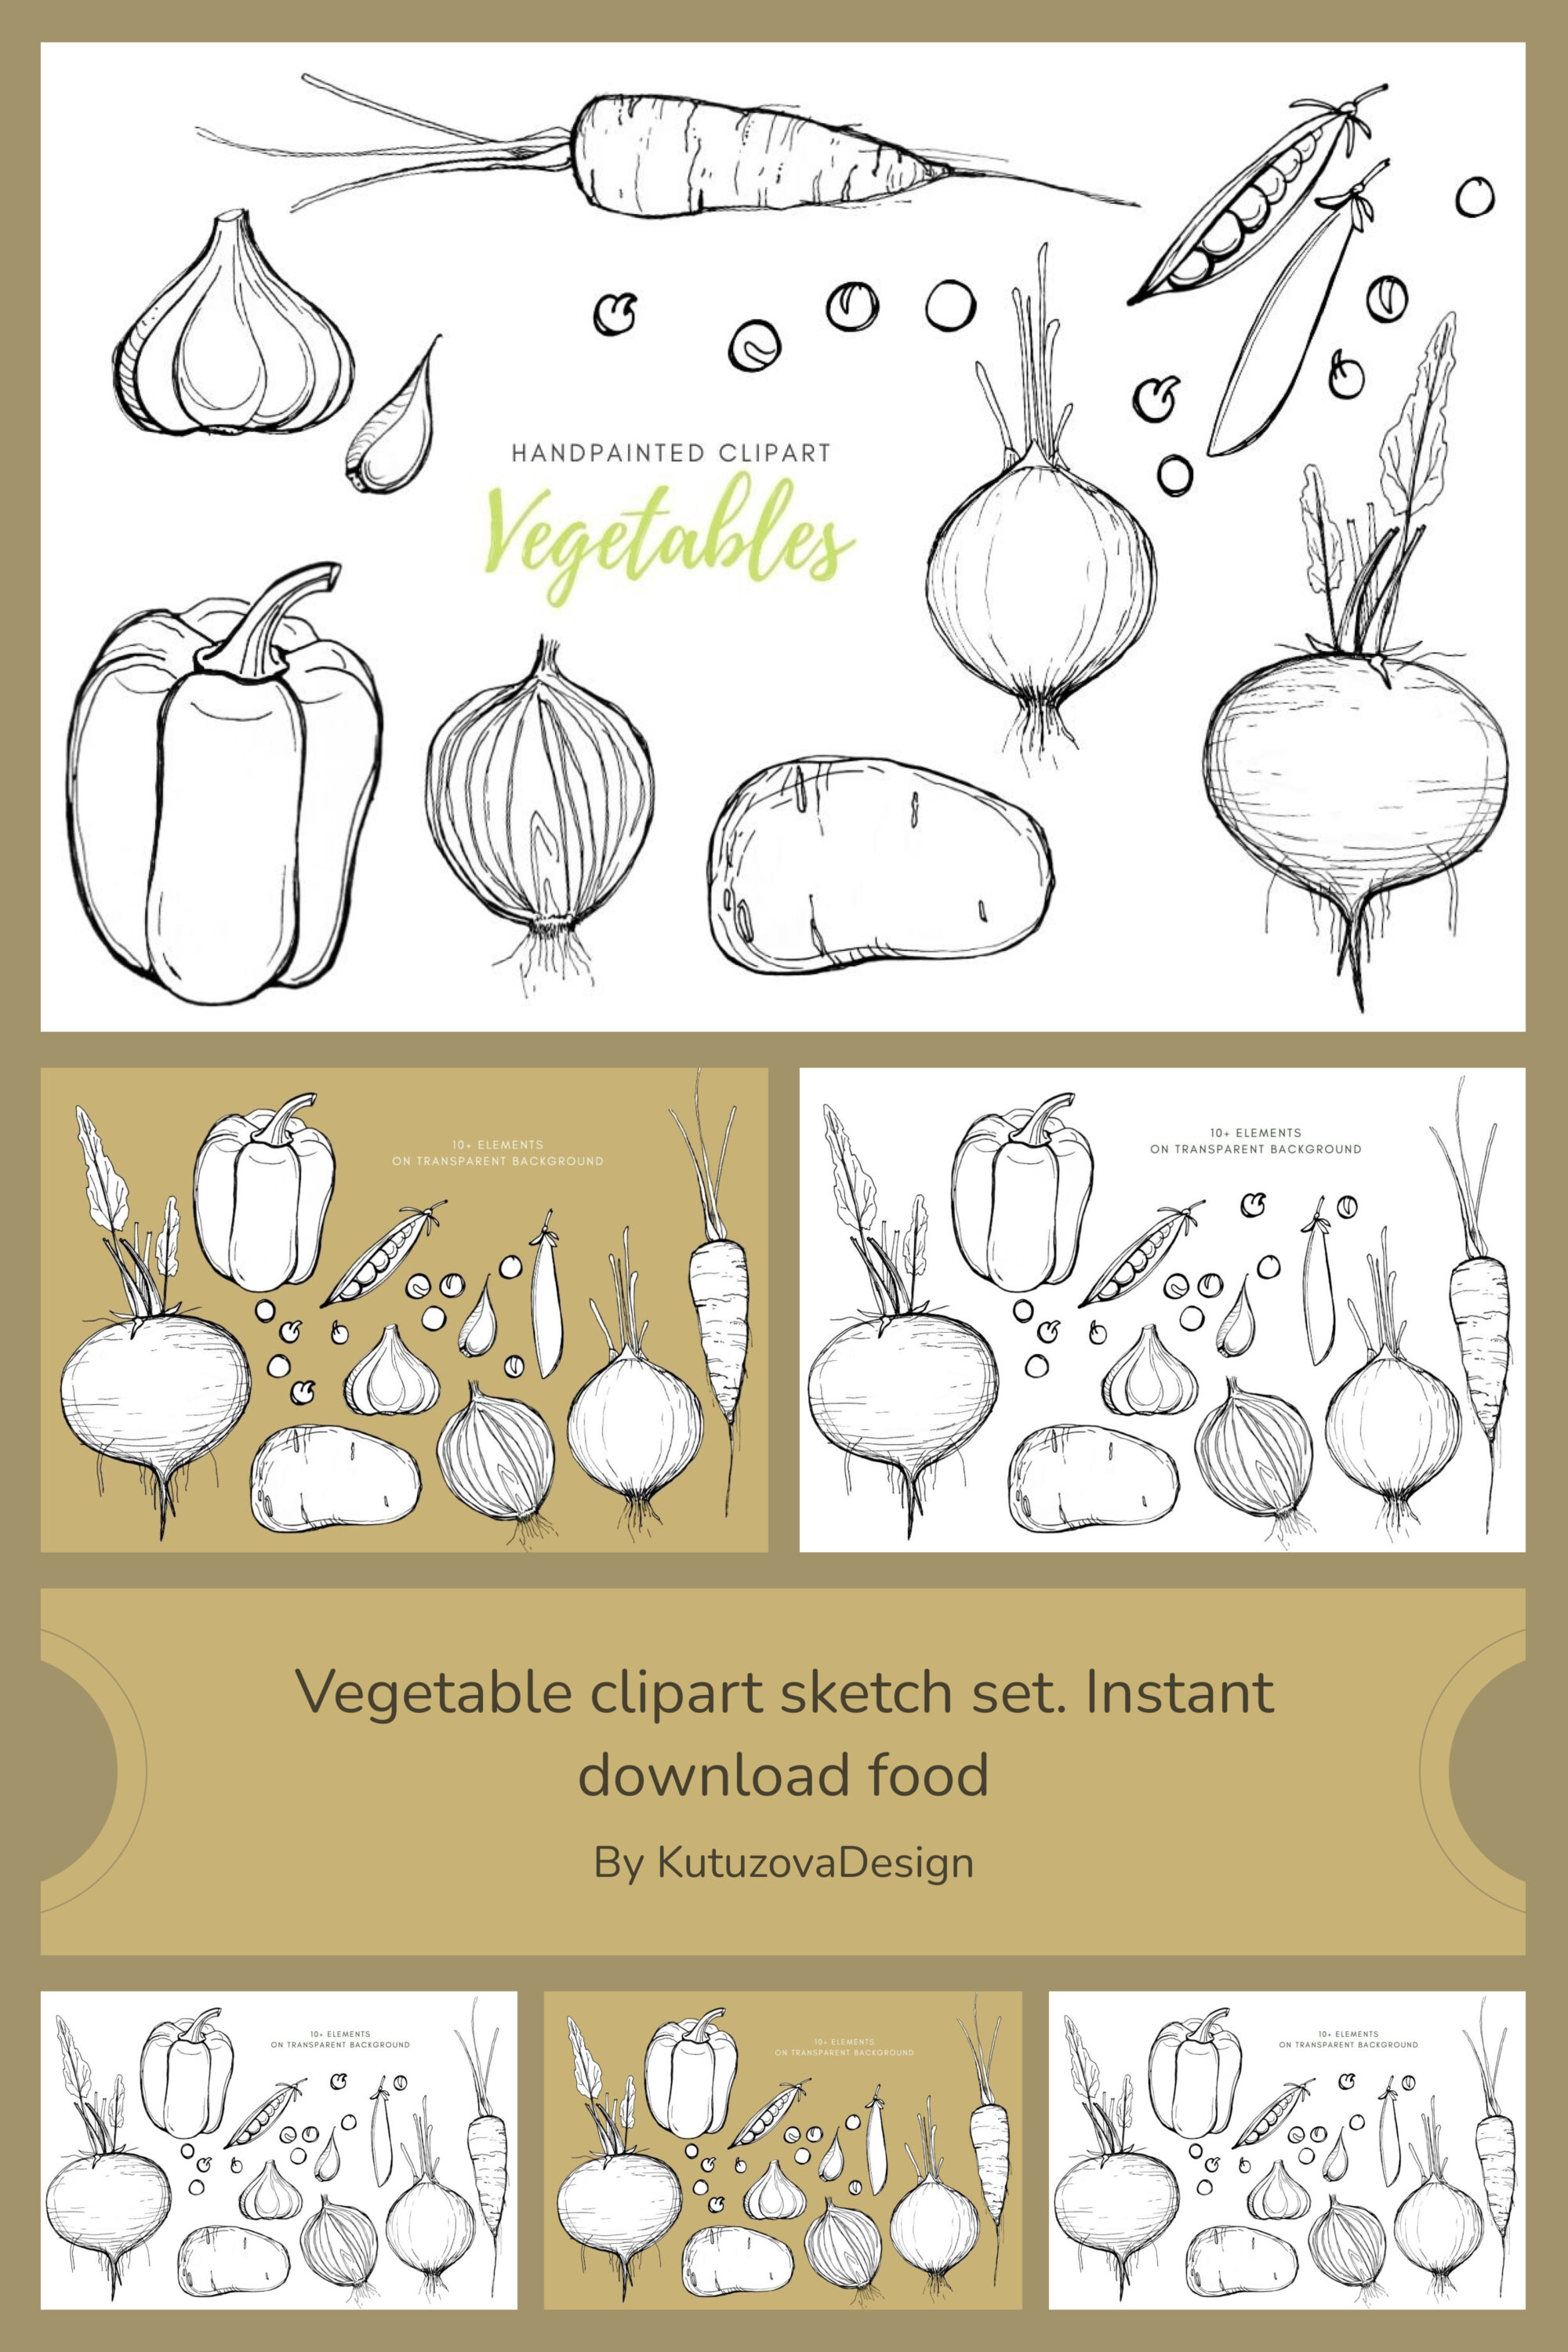 Vegetable clipart sketch set. instant download food of pinterest.